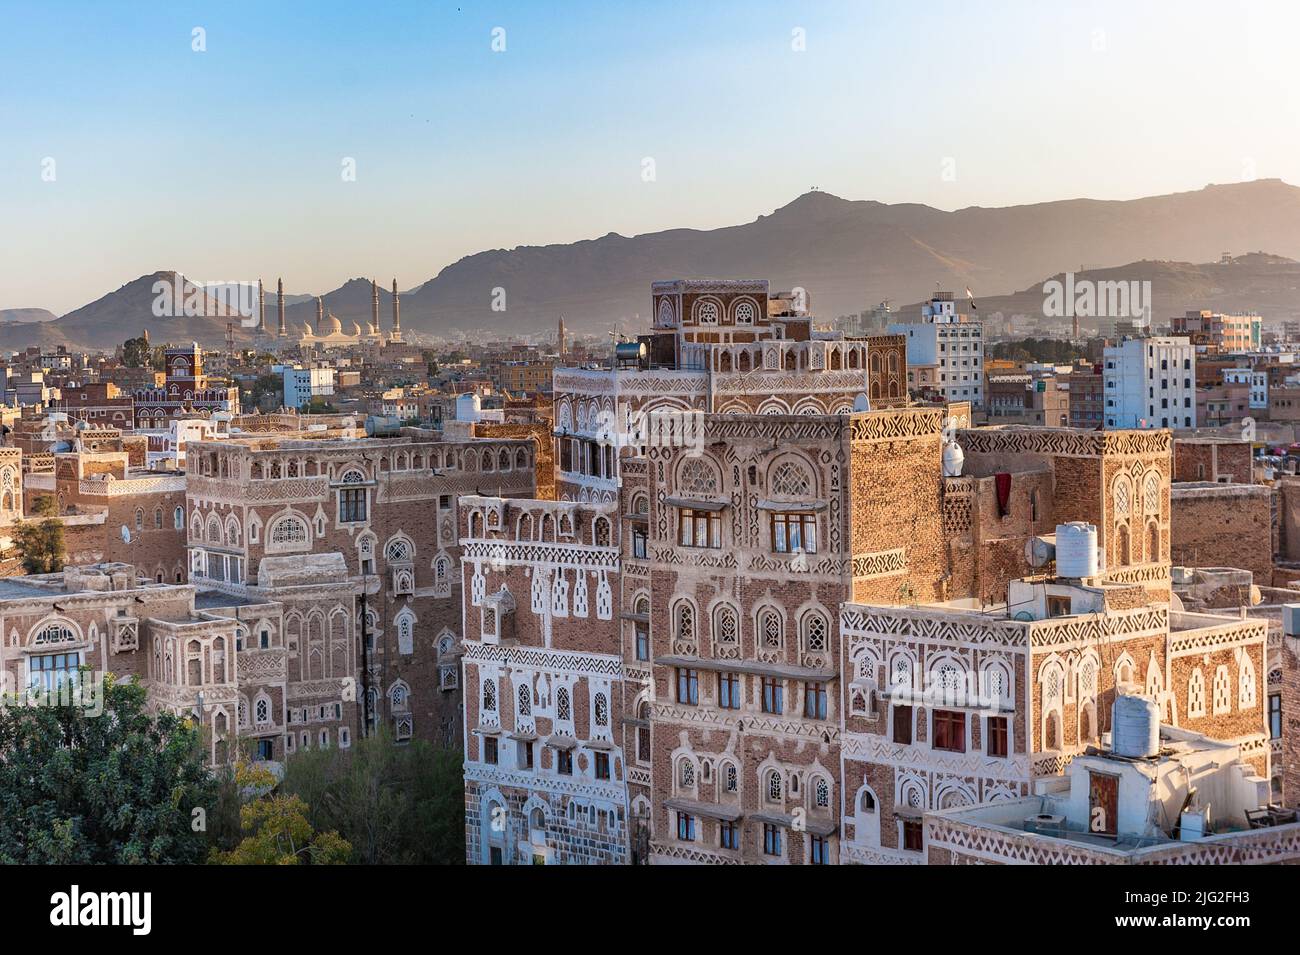 Panorama de Sanaa, capital de Yemen Foto de stock